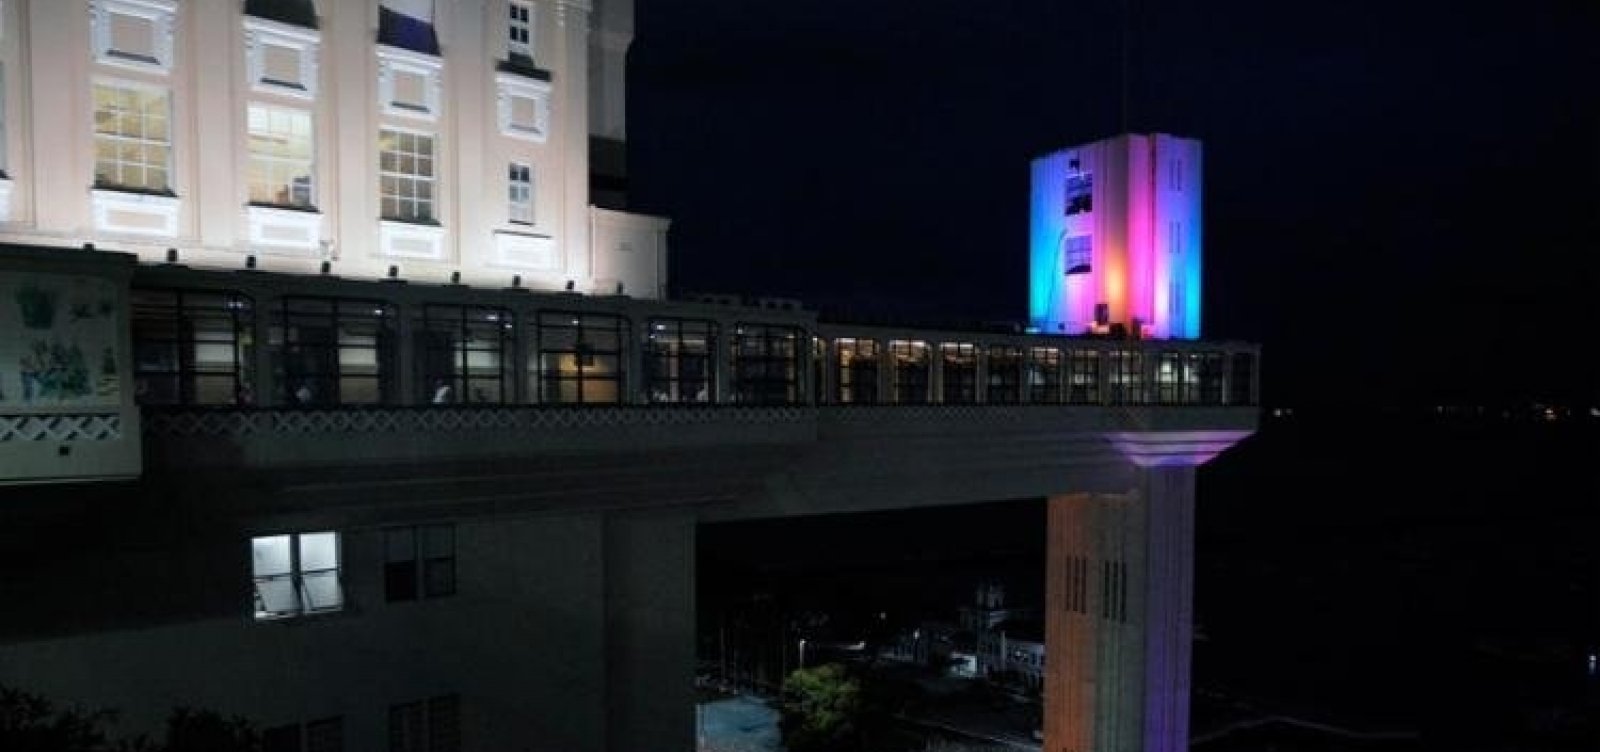 Elevador Lacerda recebe iluminação nas cores da bandeira LGBT